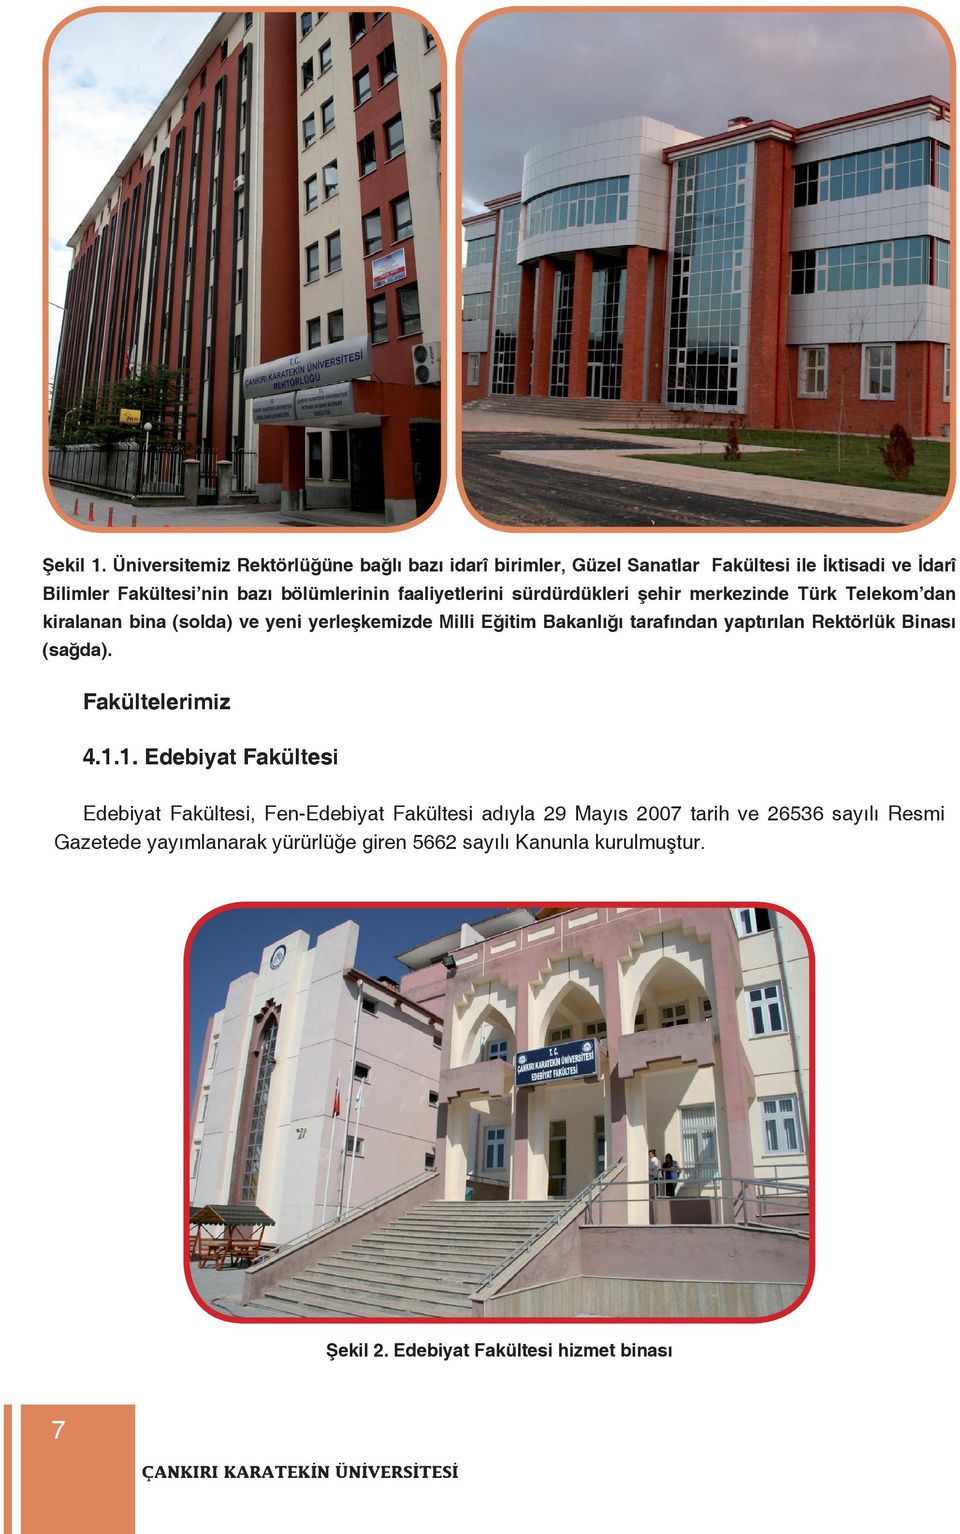 faaliyetlerini sürdürdükleri şehir merkezinde Türk Telekom dan kiralanan bina (solda) ve yeni yerleşkemizde Milli Eğitim Bakanlığı tarafından